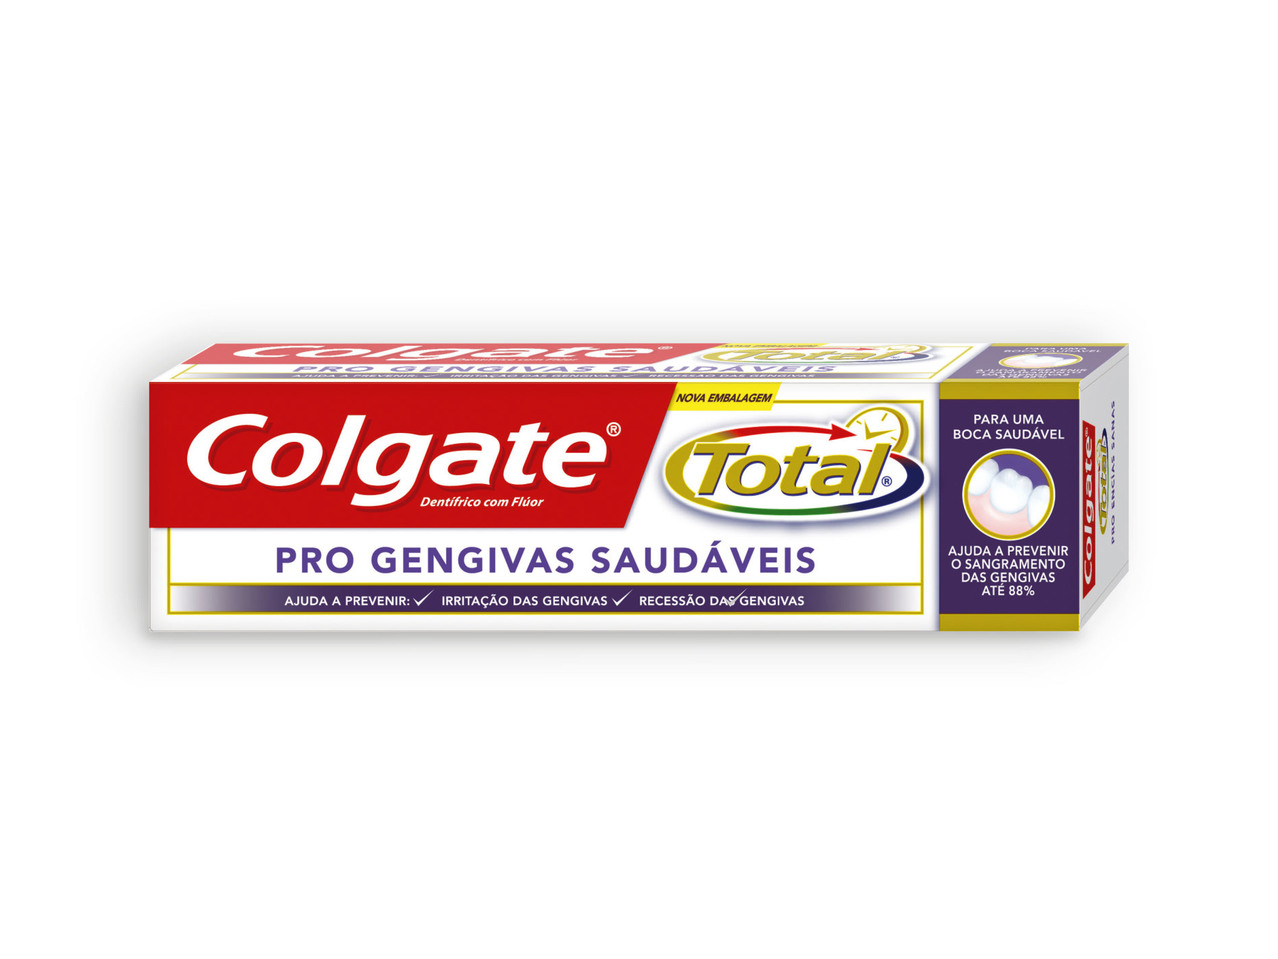 COLGATE(R) Pasta Dentífrica Total Pro-Gengivas Saudáveis